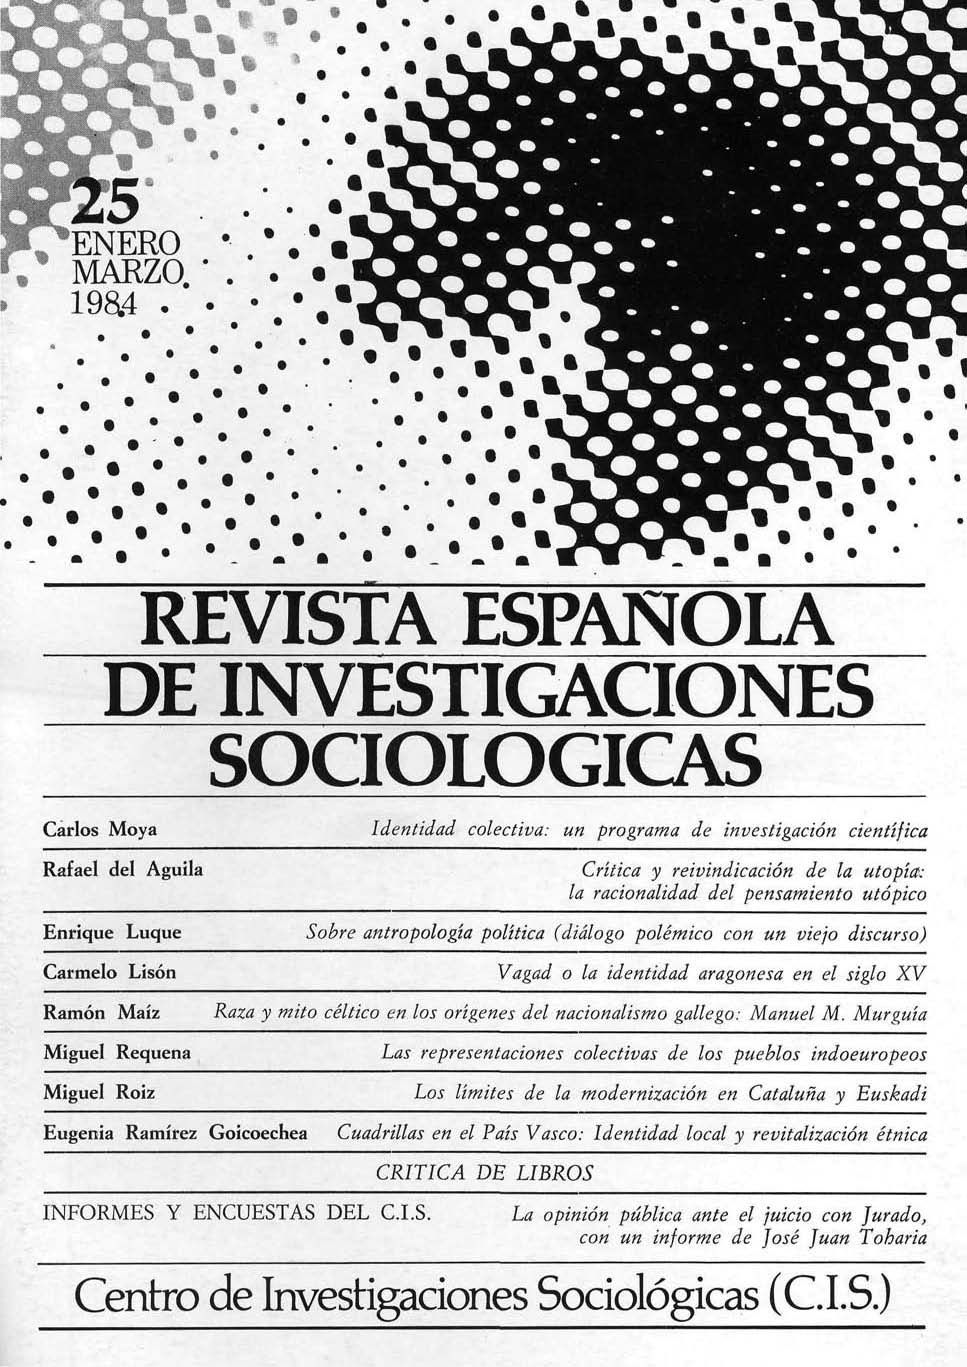 REIS. Revista Española de Investigaciones Sociológicas núm. 25